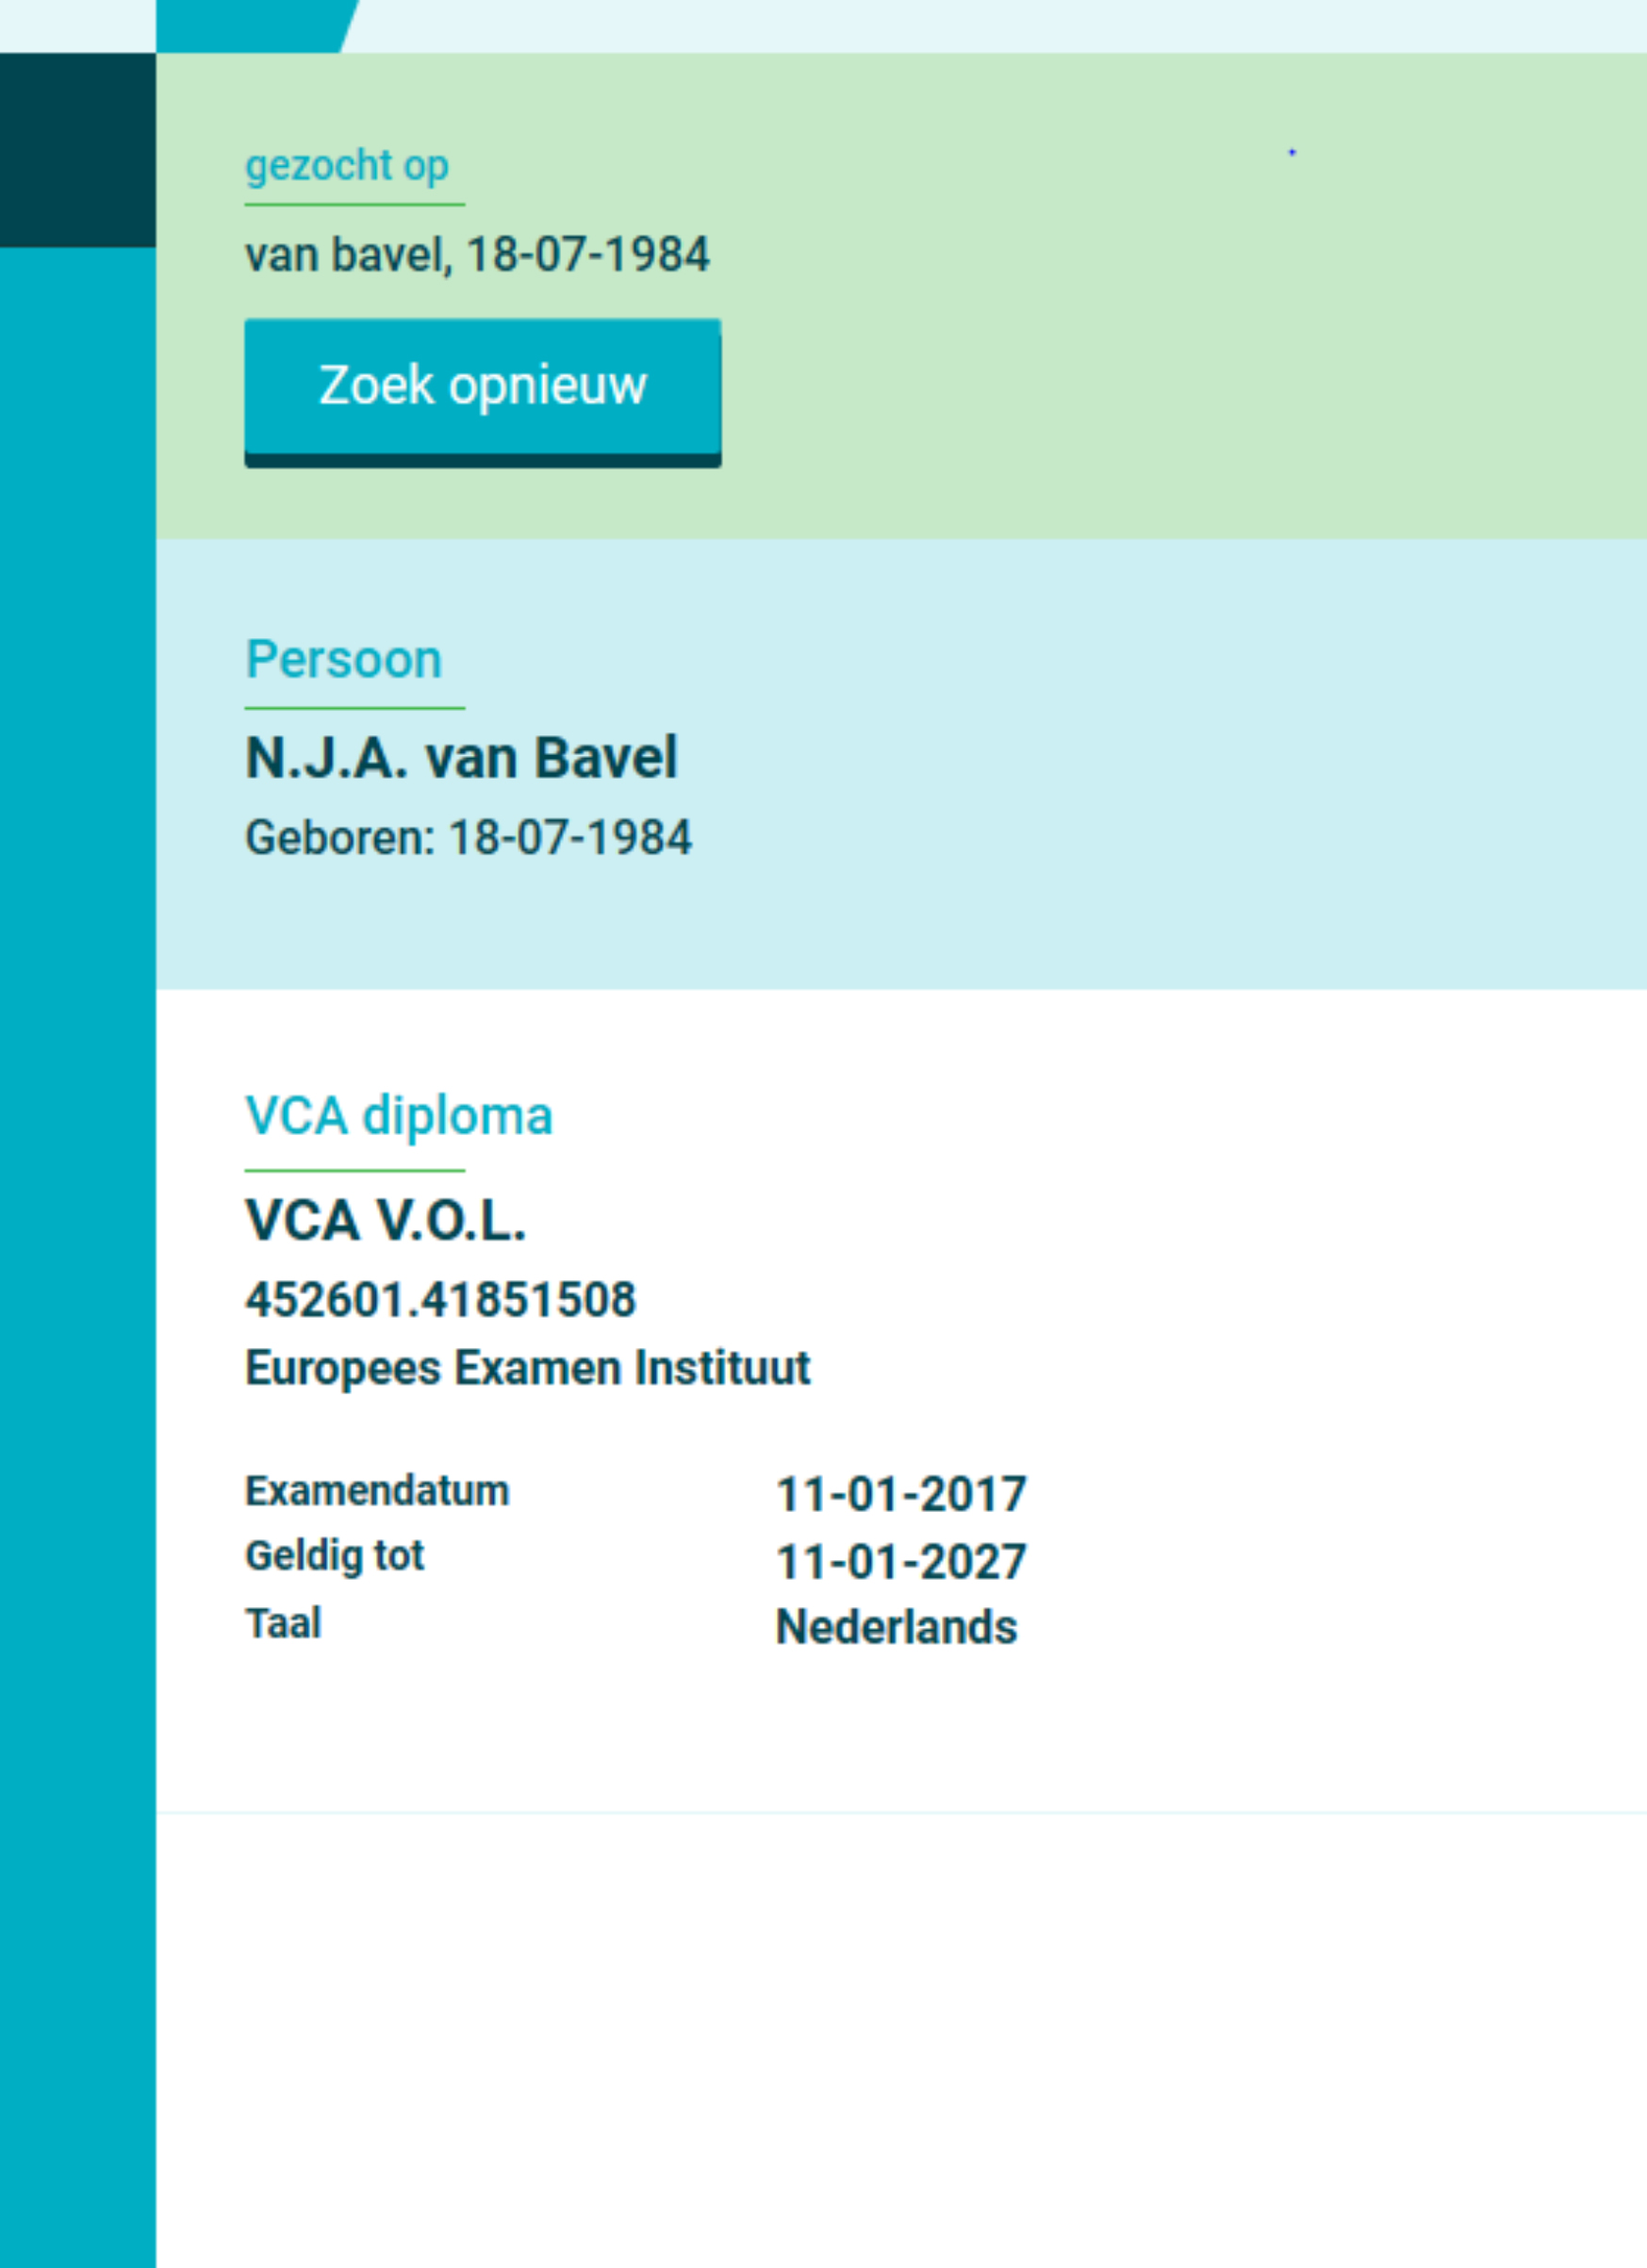 VCA diploma Bert van Bavel